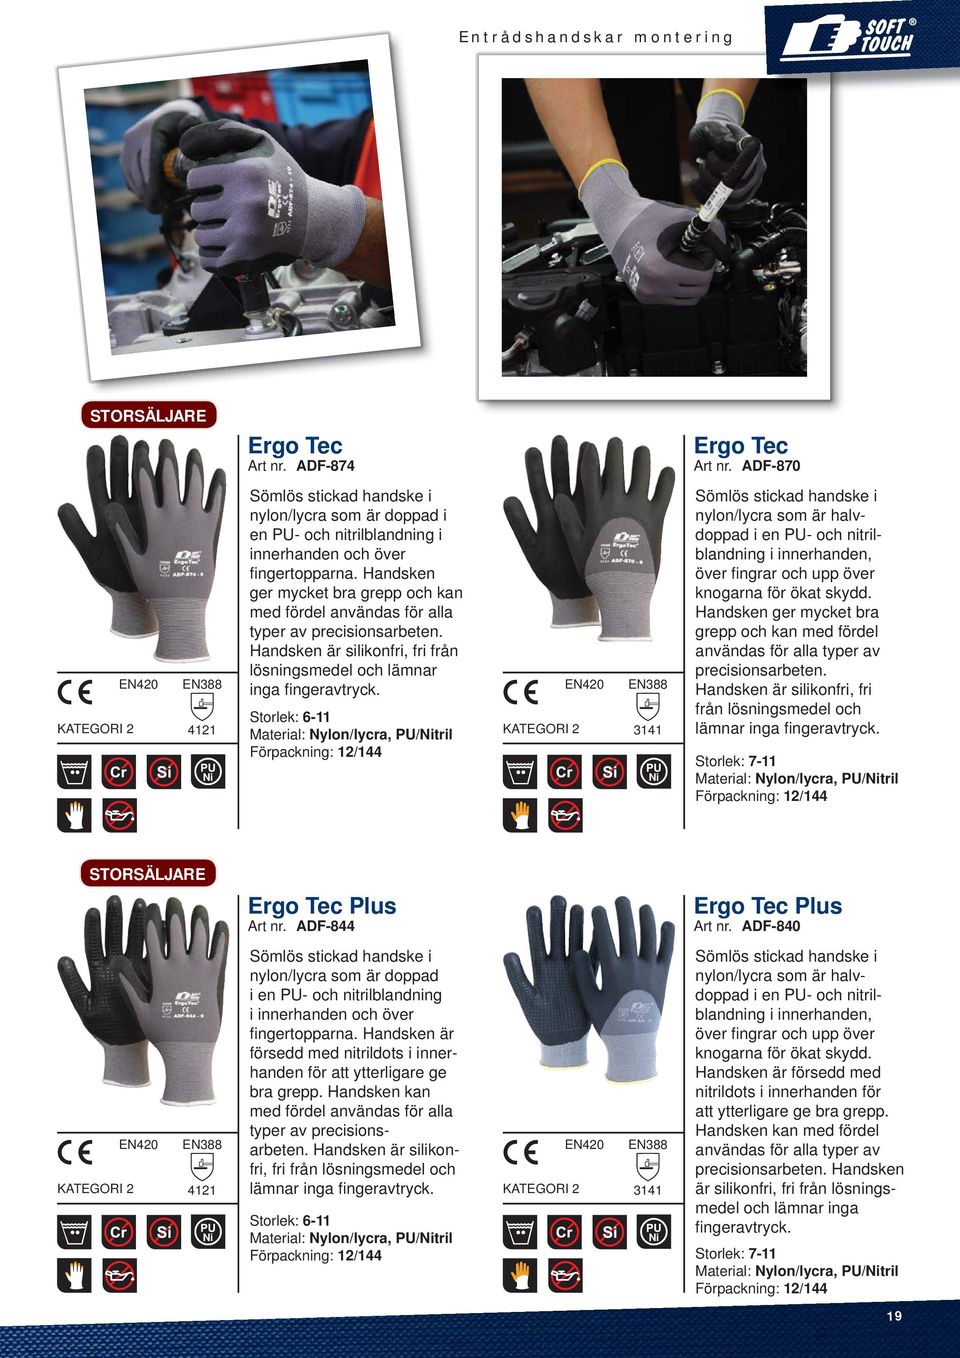 Storlek: 6-11 Material: Nylon/lycra, PU/Nitril Förpackning: 12/144 3141 Ni Sömlös stickad handske i nylon/lycra som är halvdoppad i en PU- och nitrilblandning i innerhanden, över fi ngrar och upp